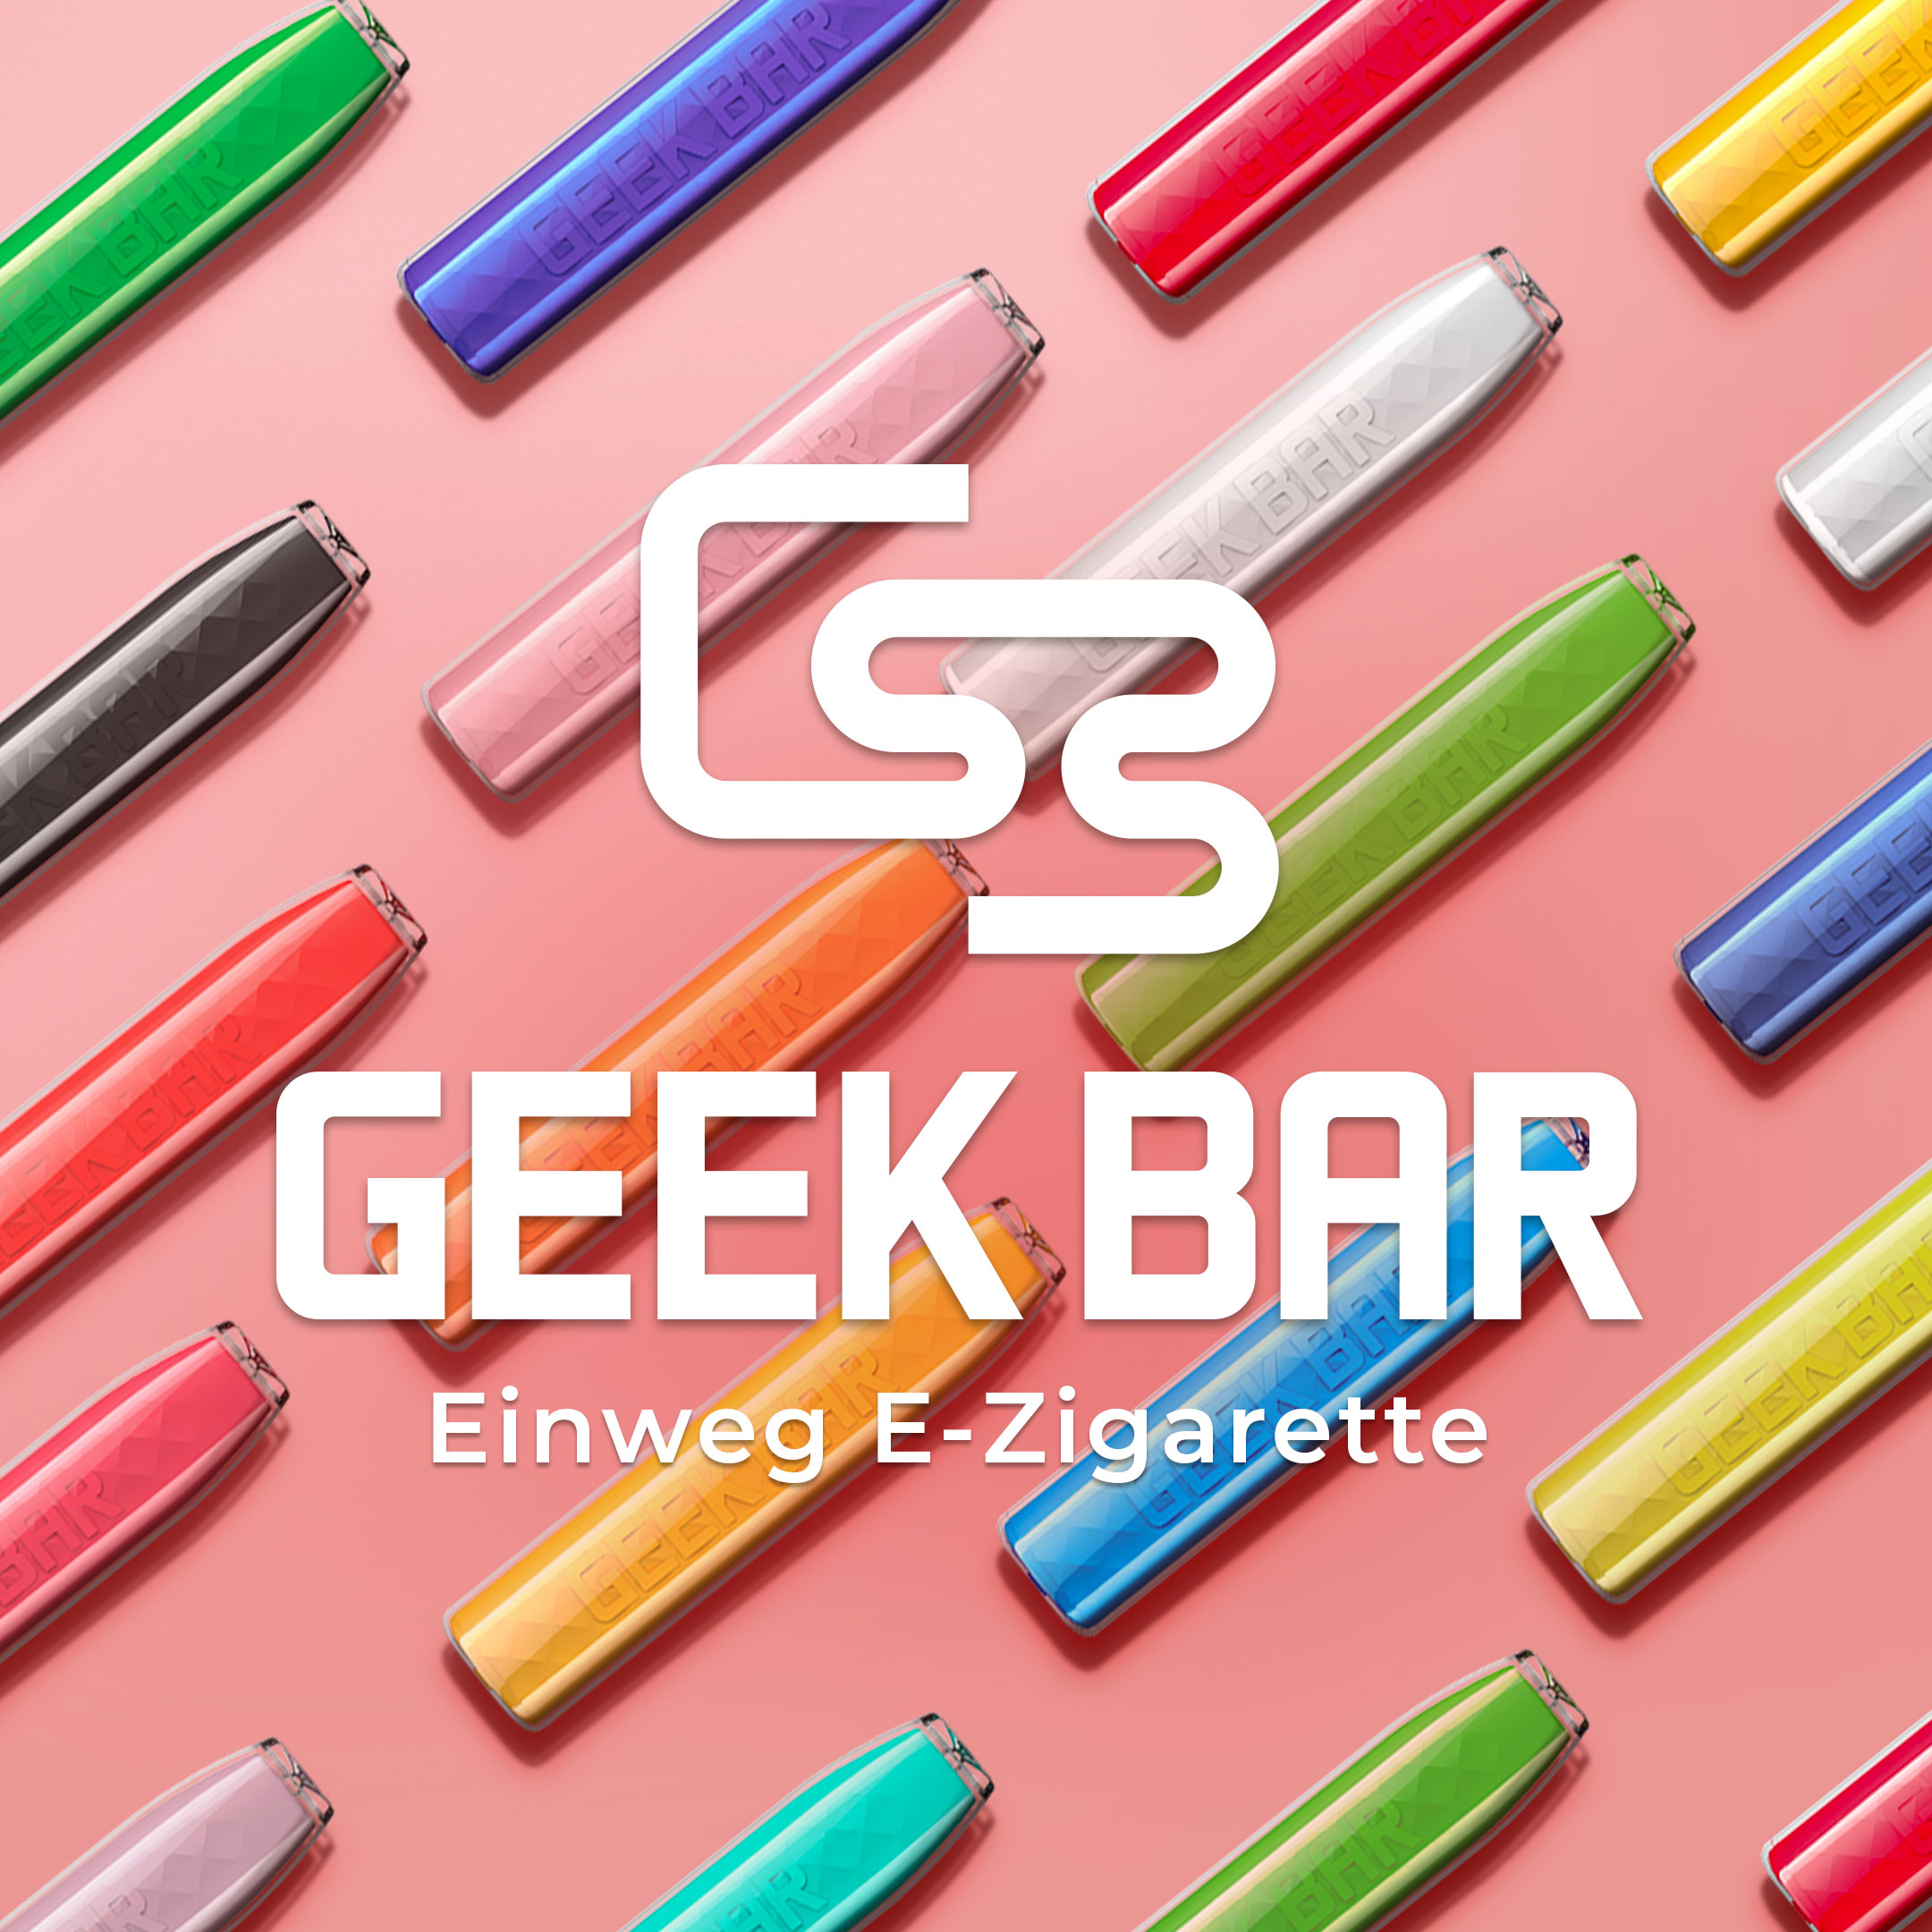 GEEKBAR by Geekvape - Einweg E-Zigarette Vape Pen 20mg/ml Sour Apple